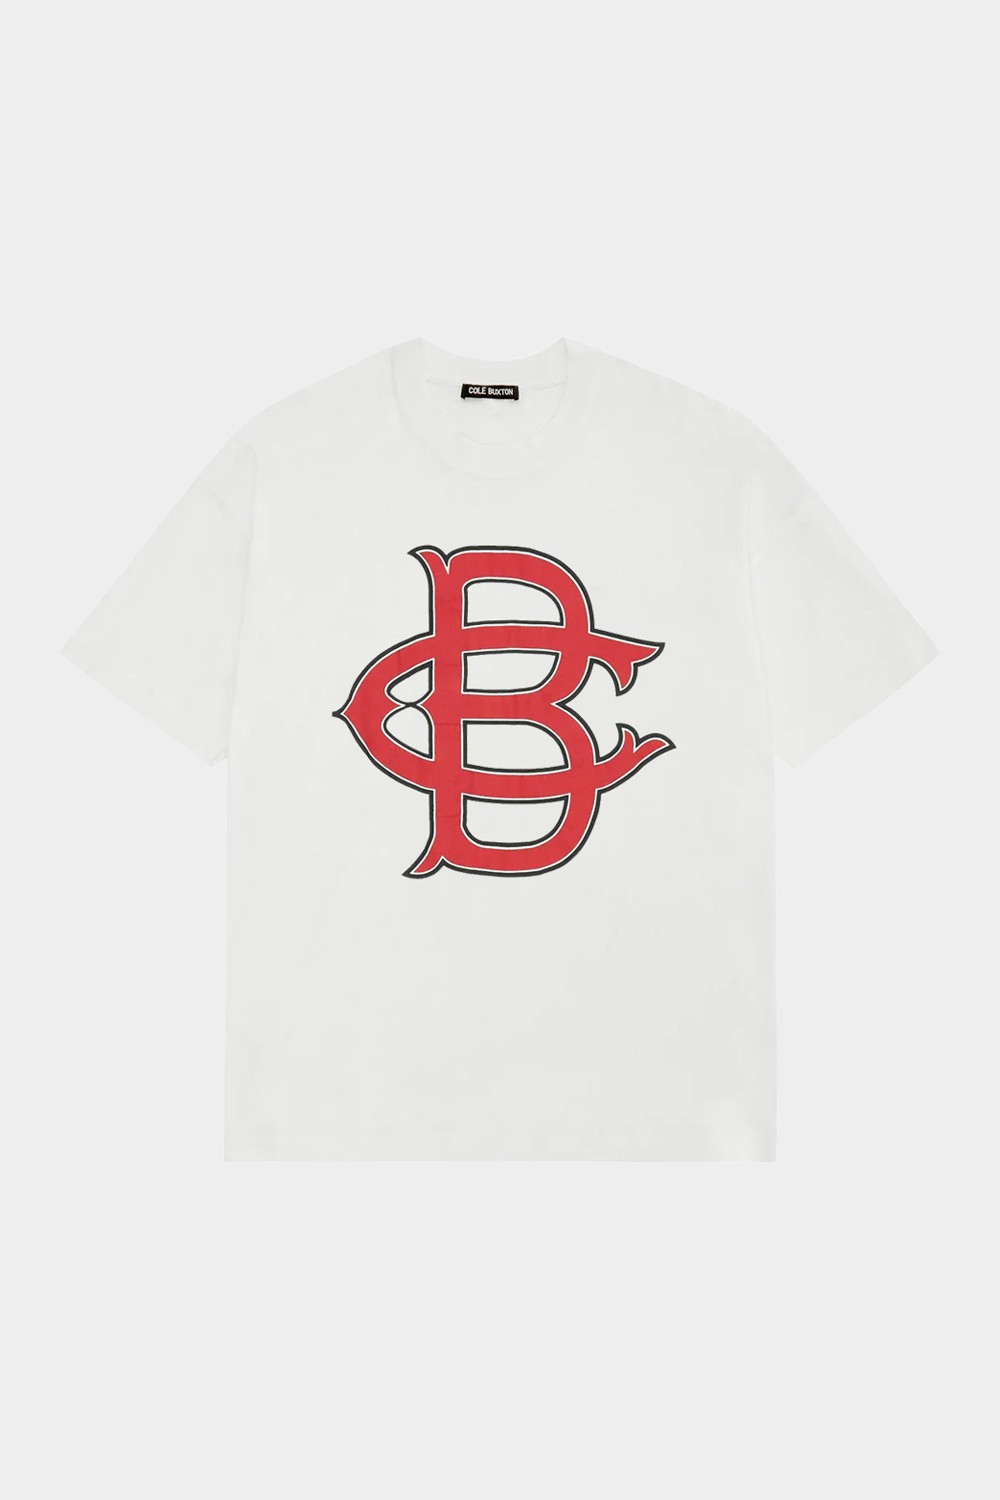 C.B. Oversized Baseball T Shirt White (CLBXT14)